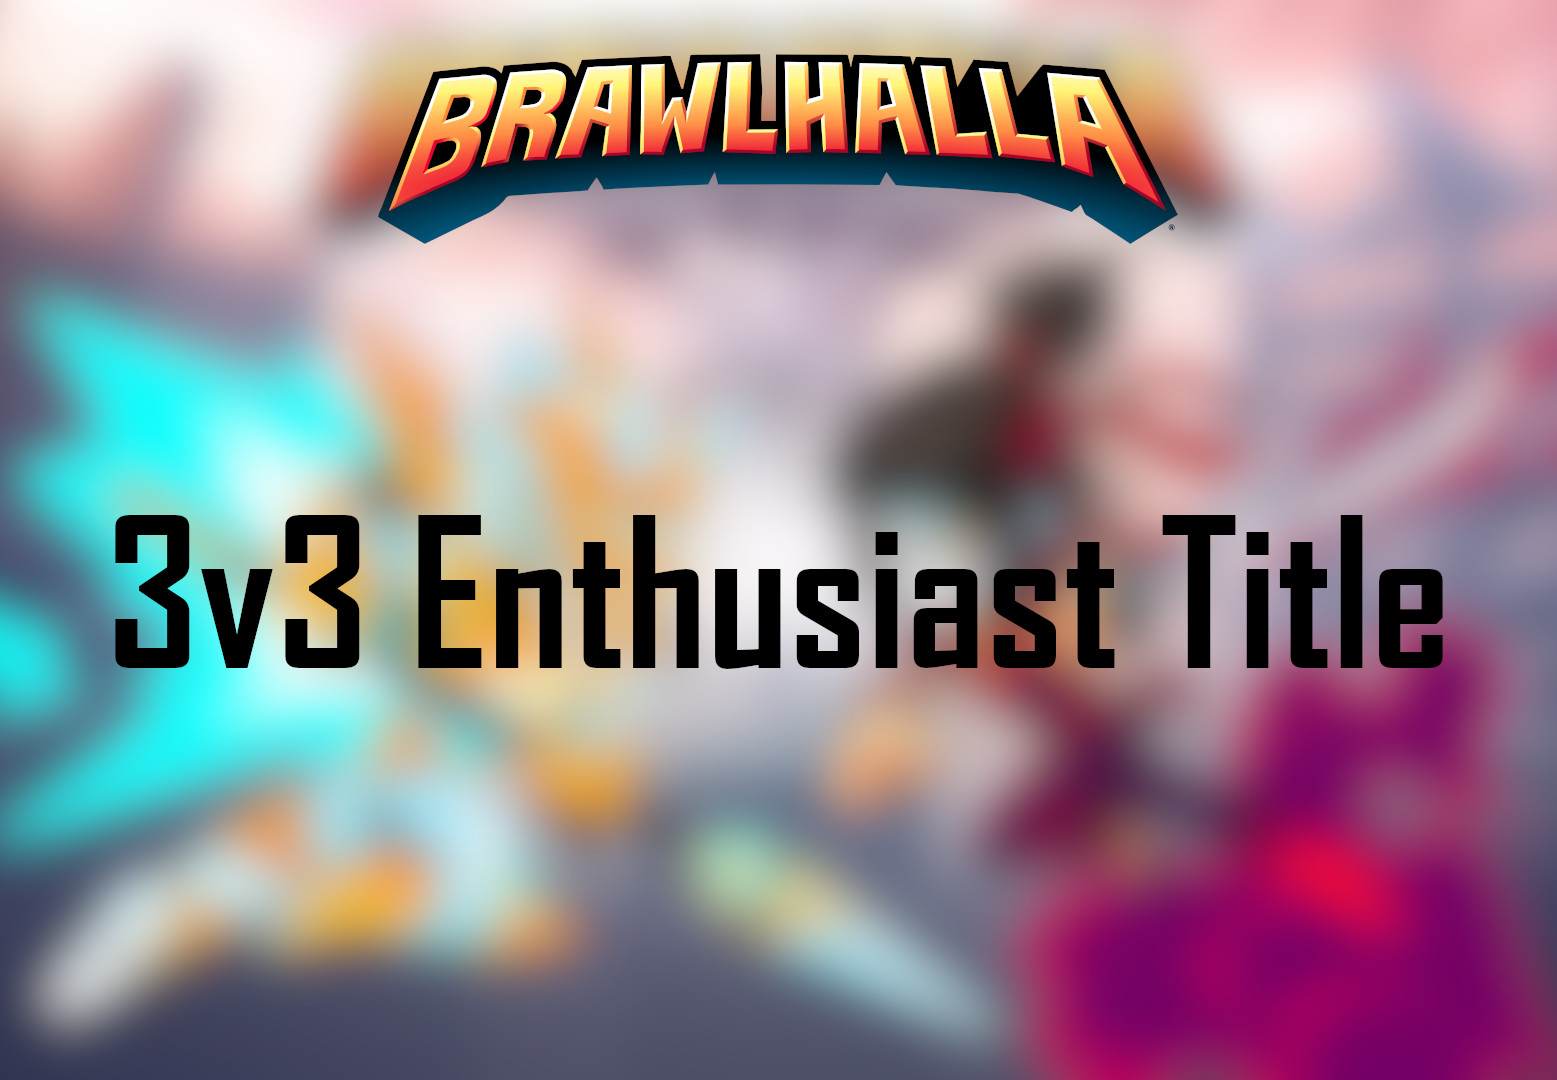 [$ 2.02] Brawlhalla - 3v3 Enthusiast Title DLC CD Key